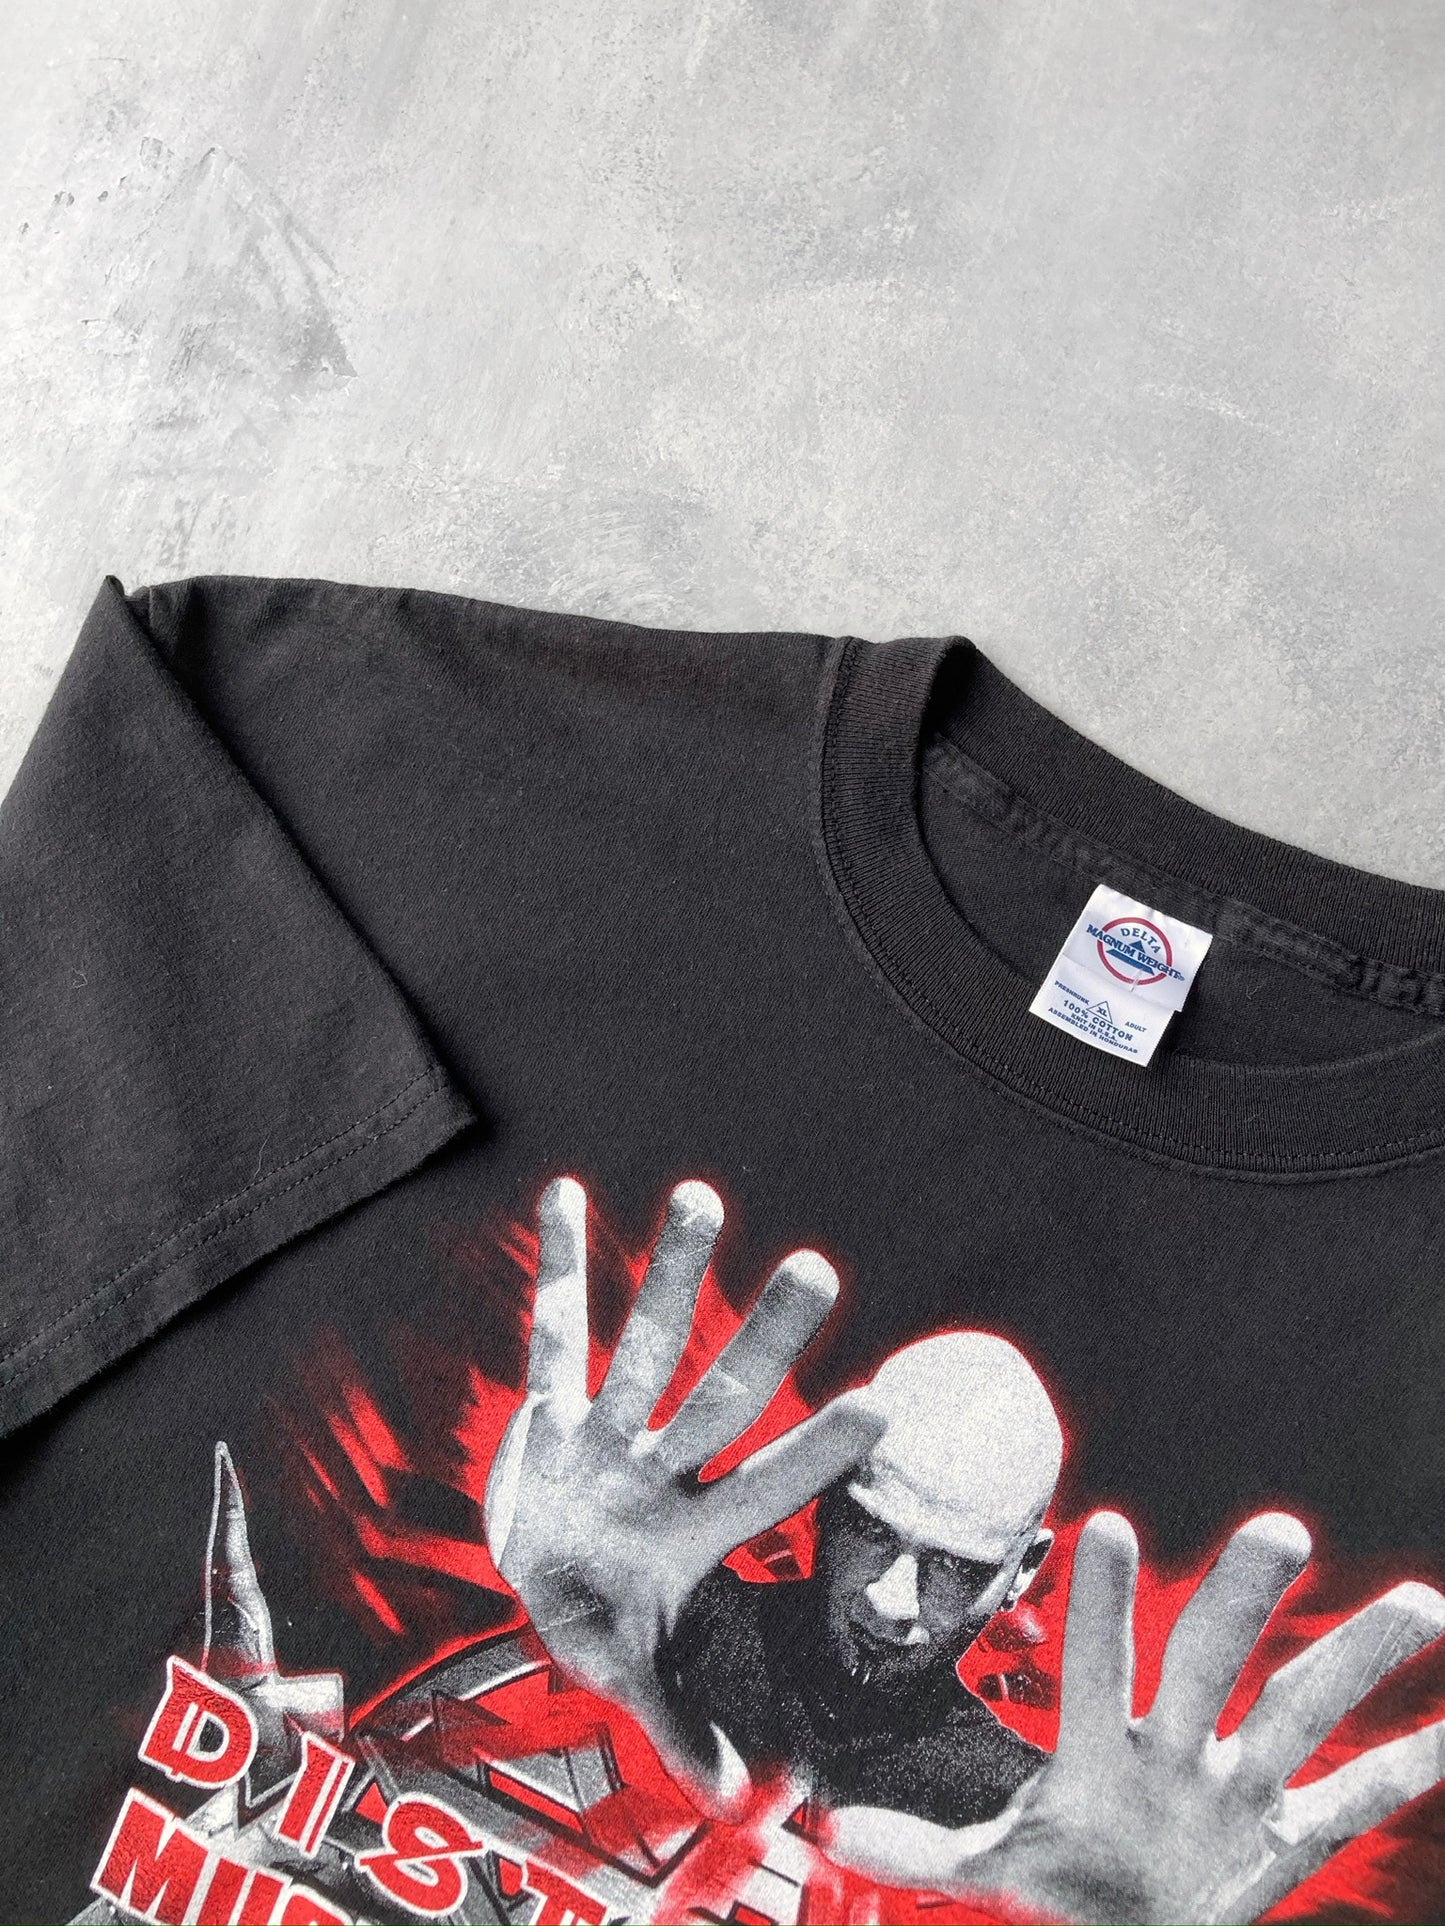 Disturbed Tour T-Shirt '03 - XL